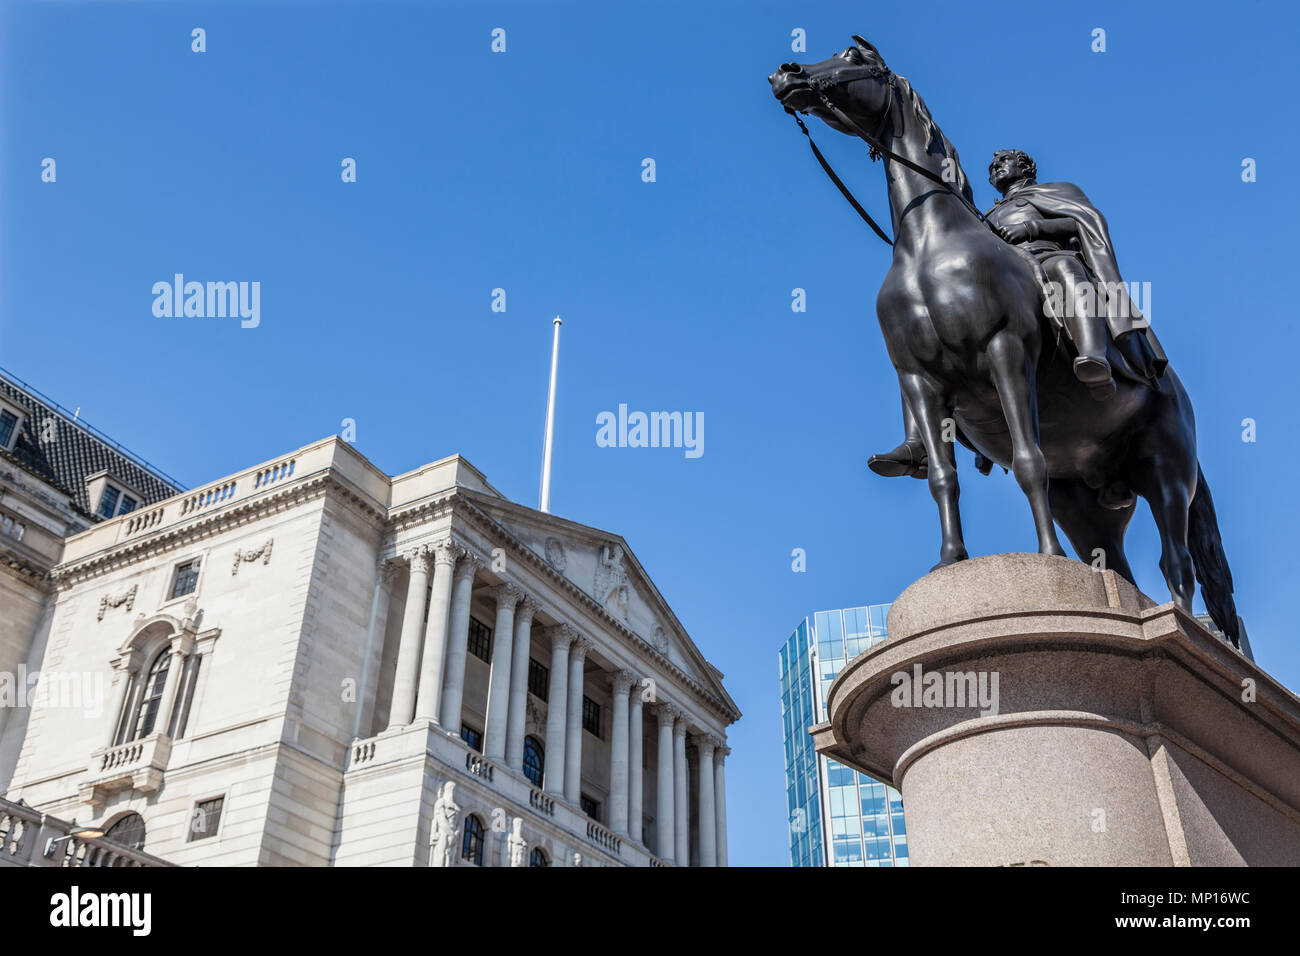 Banque d'Angleterre sur Threadneedle Street au coeur du quartier financier de Londres et, avec la statue du duc de Wellington dans l'avant-plan Banque D'Images